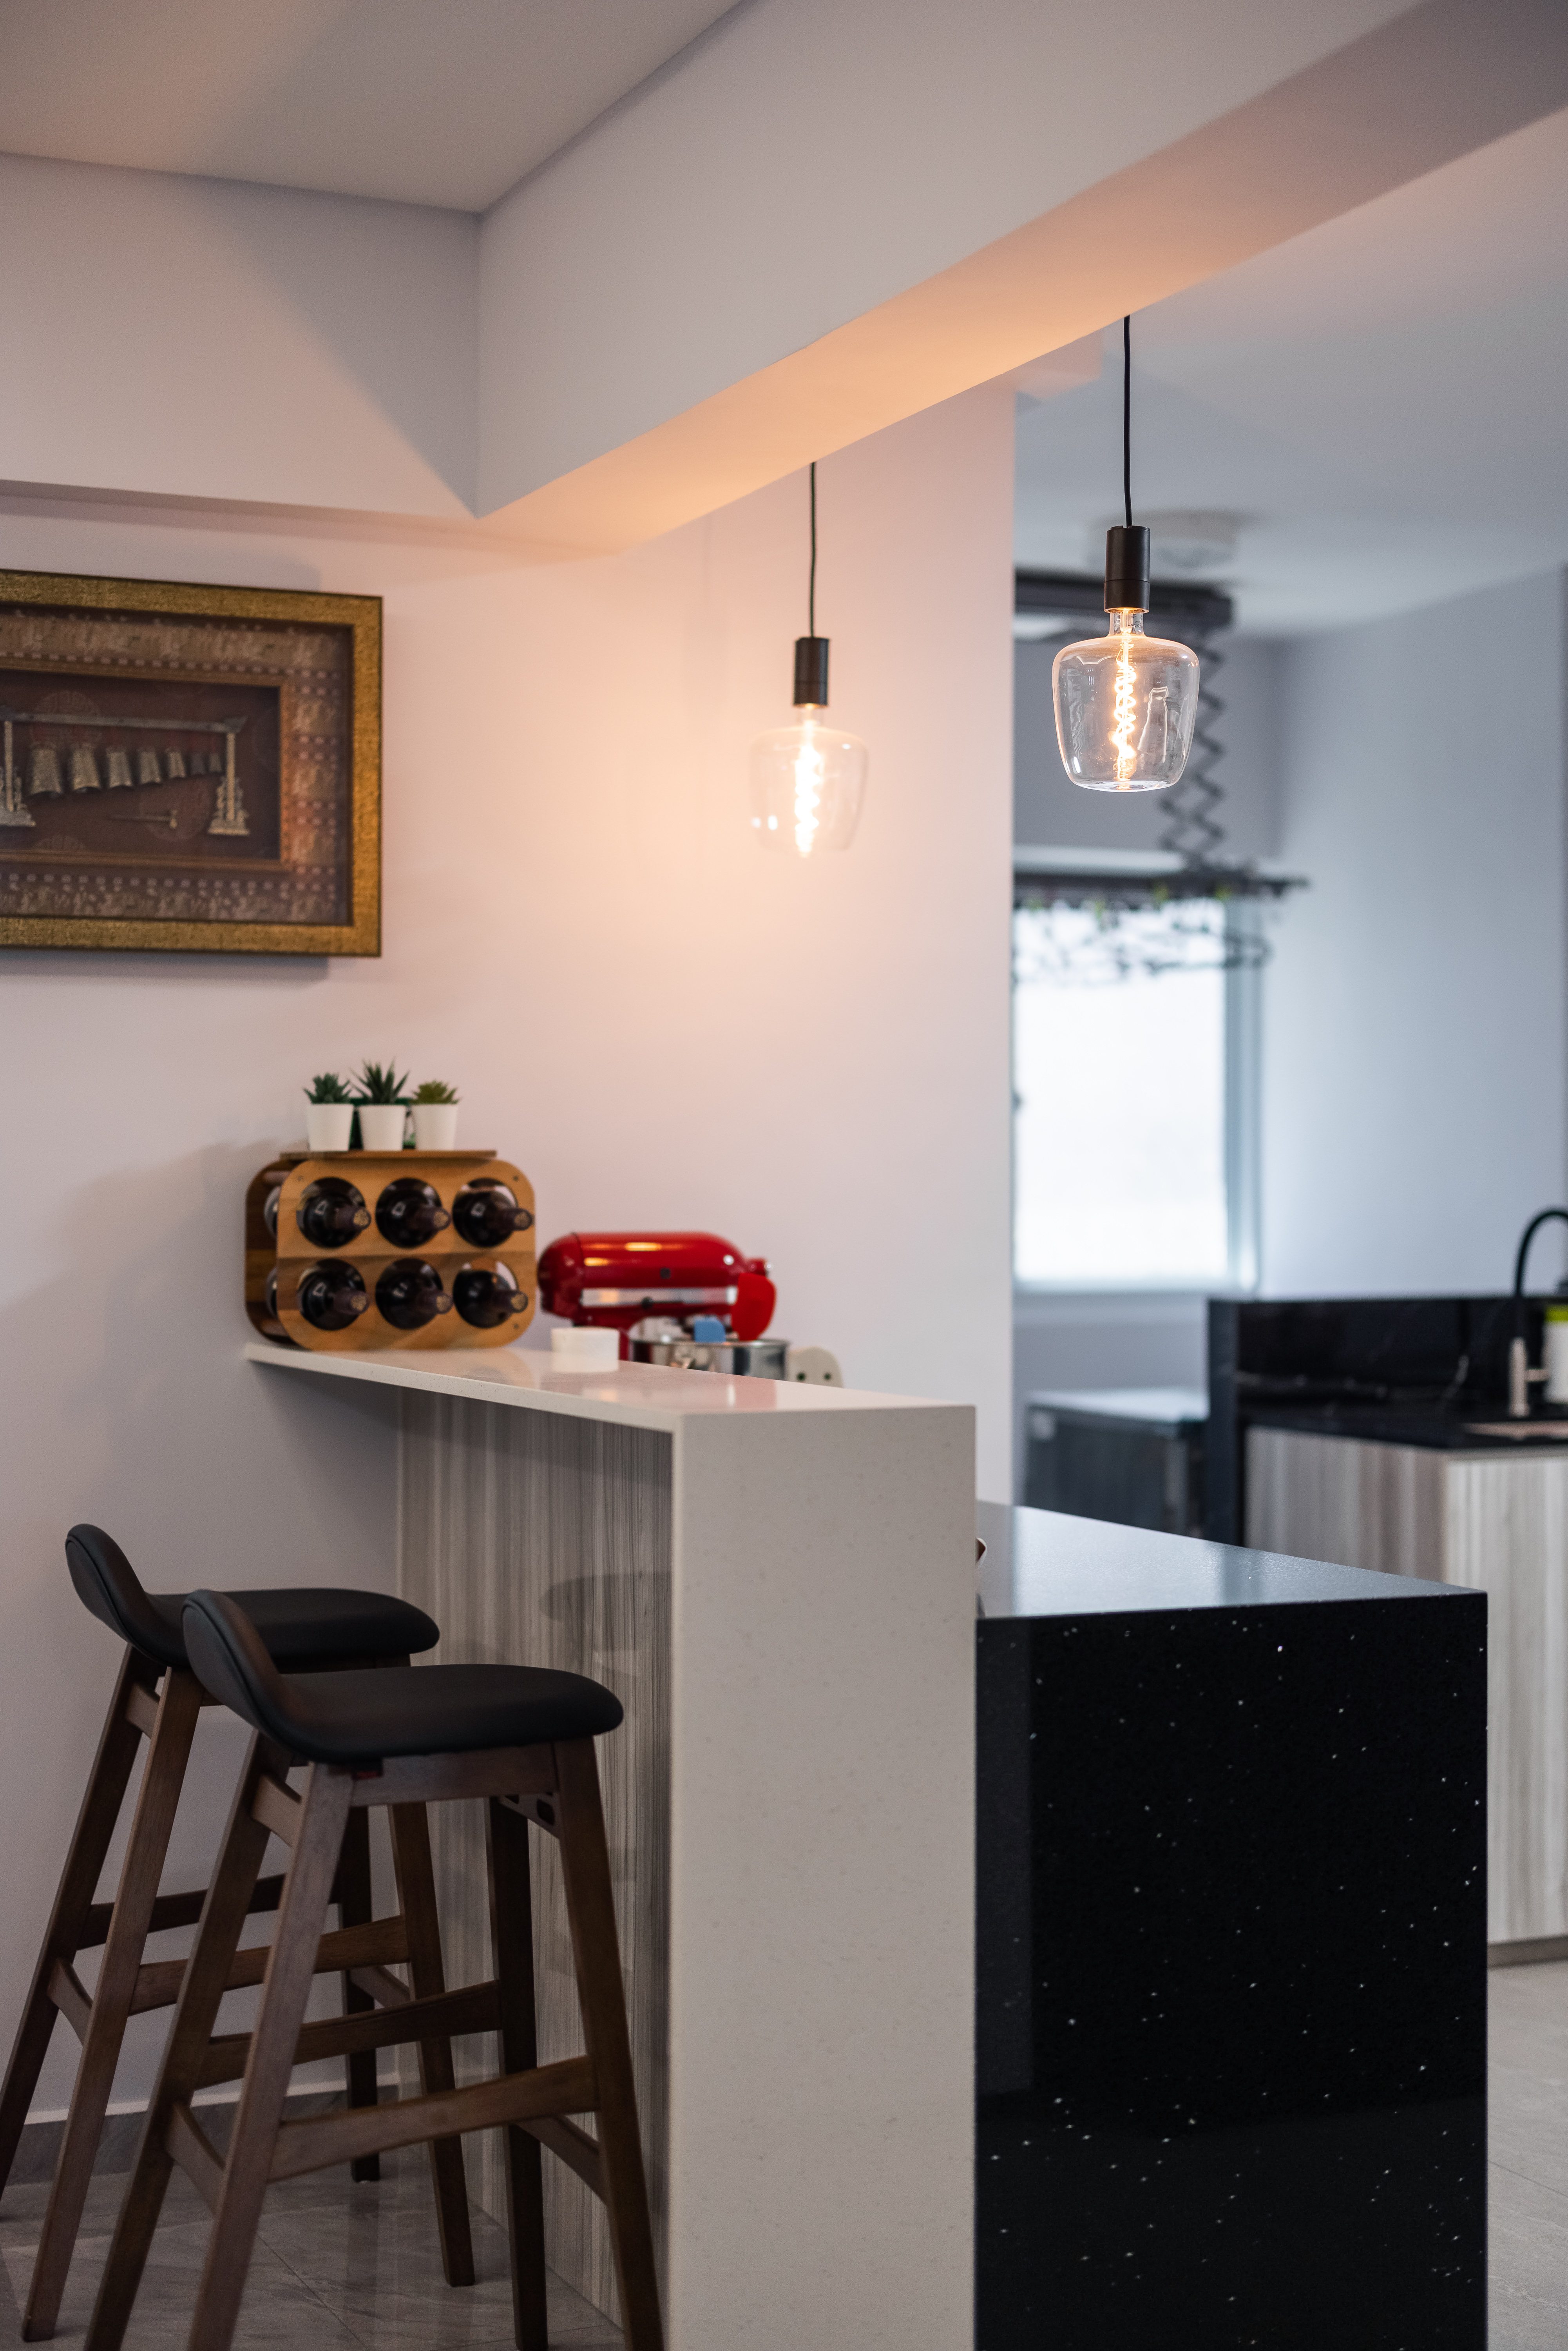 Contemporary, Modern Design - Kitchen - HDB 5 Room - Design by U-Home Interior Design Pte Ltd